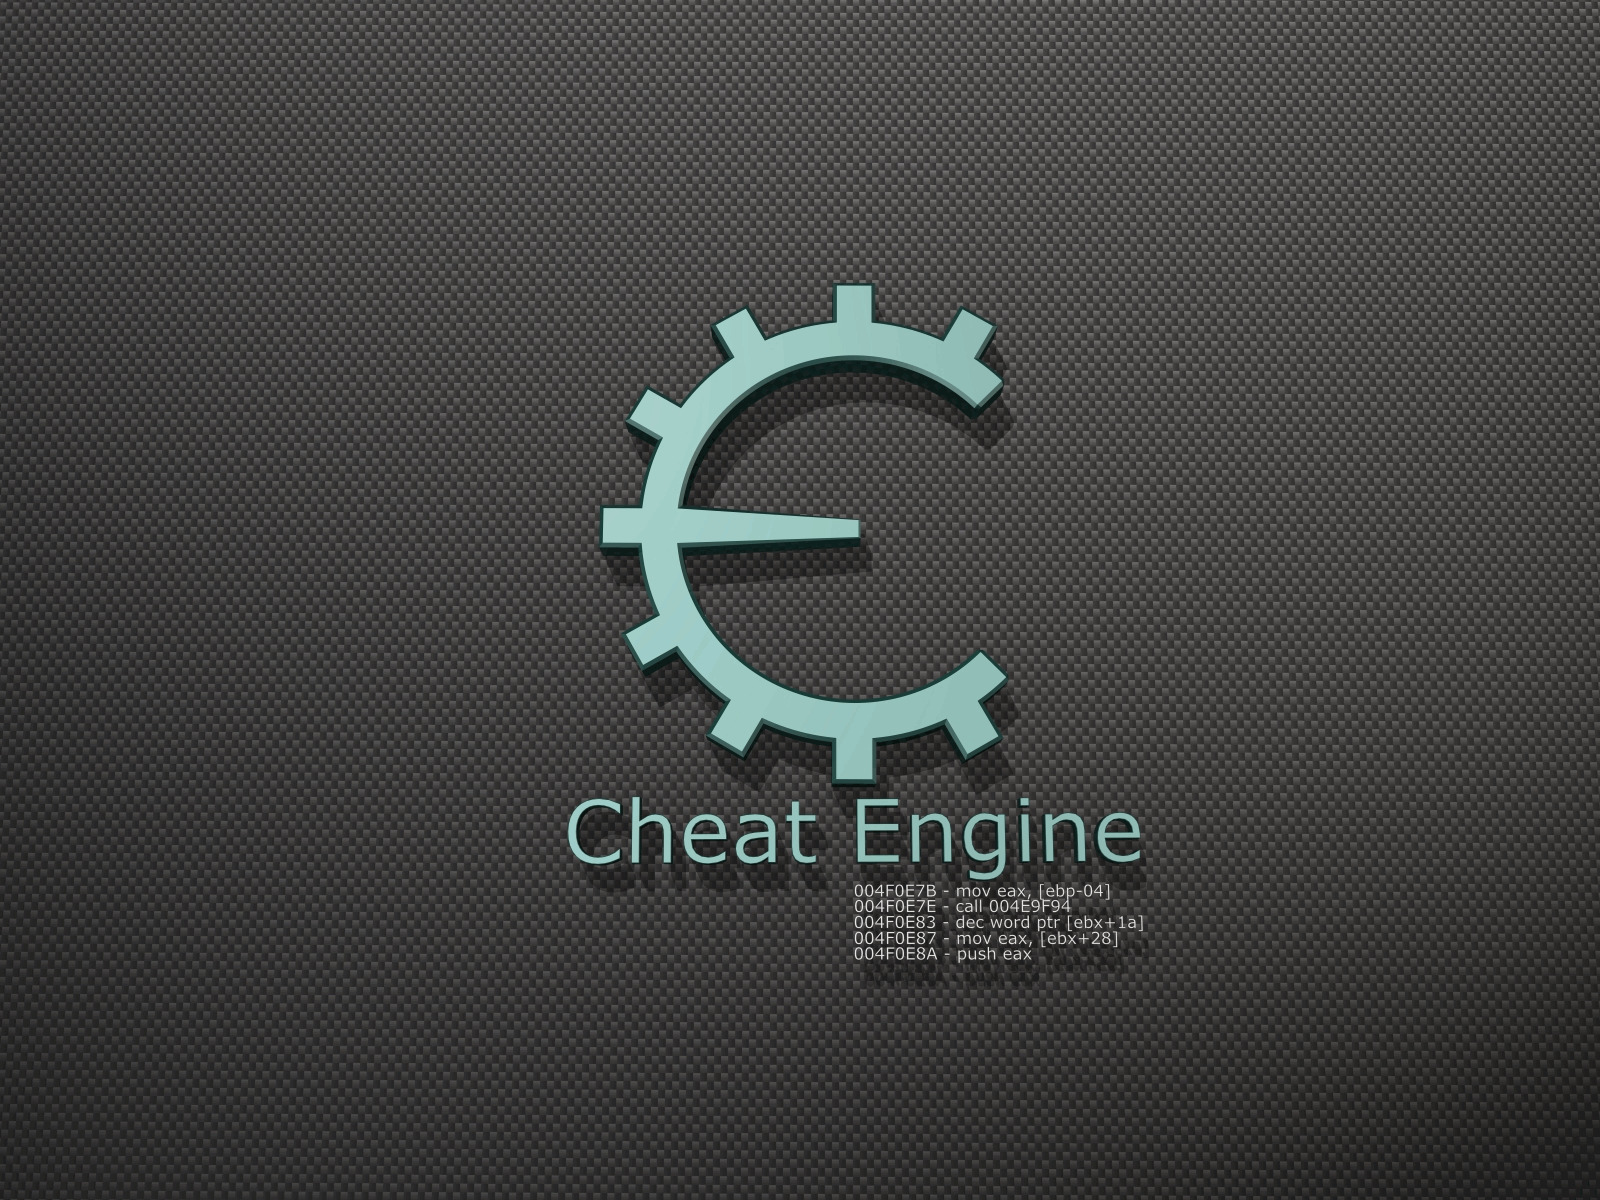 Cheat engine games. Cheat engine. Cheat engine логотип. Cheat engine ярлык. Cheat engine 7.2.